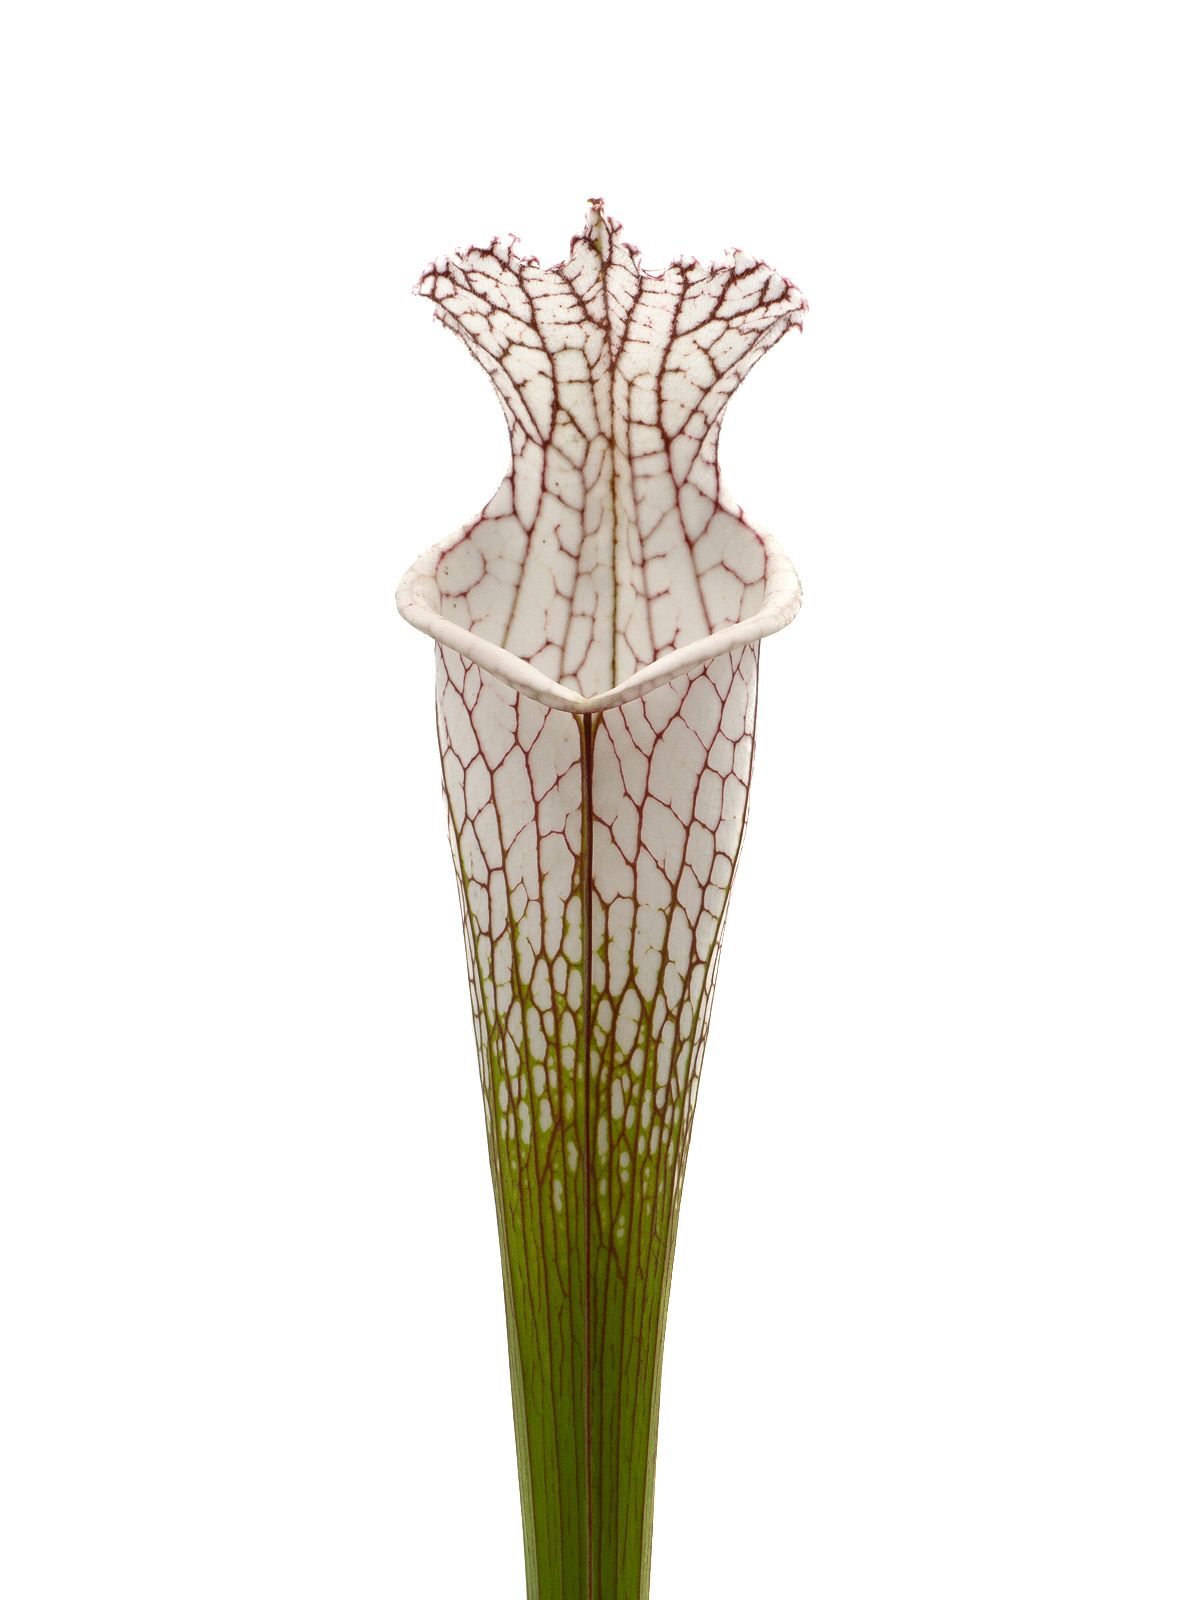 Sarracenia leucophylla - MK L133C, Splinter Hill, Perdido, Baldwin County, Alabama